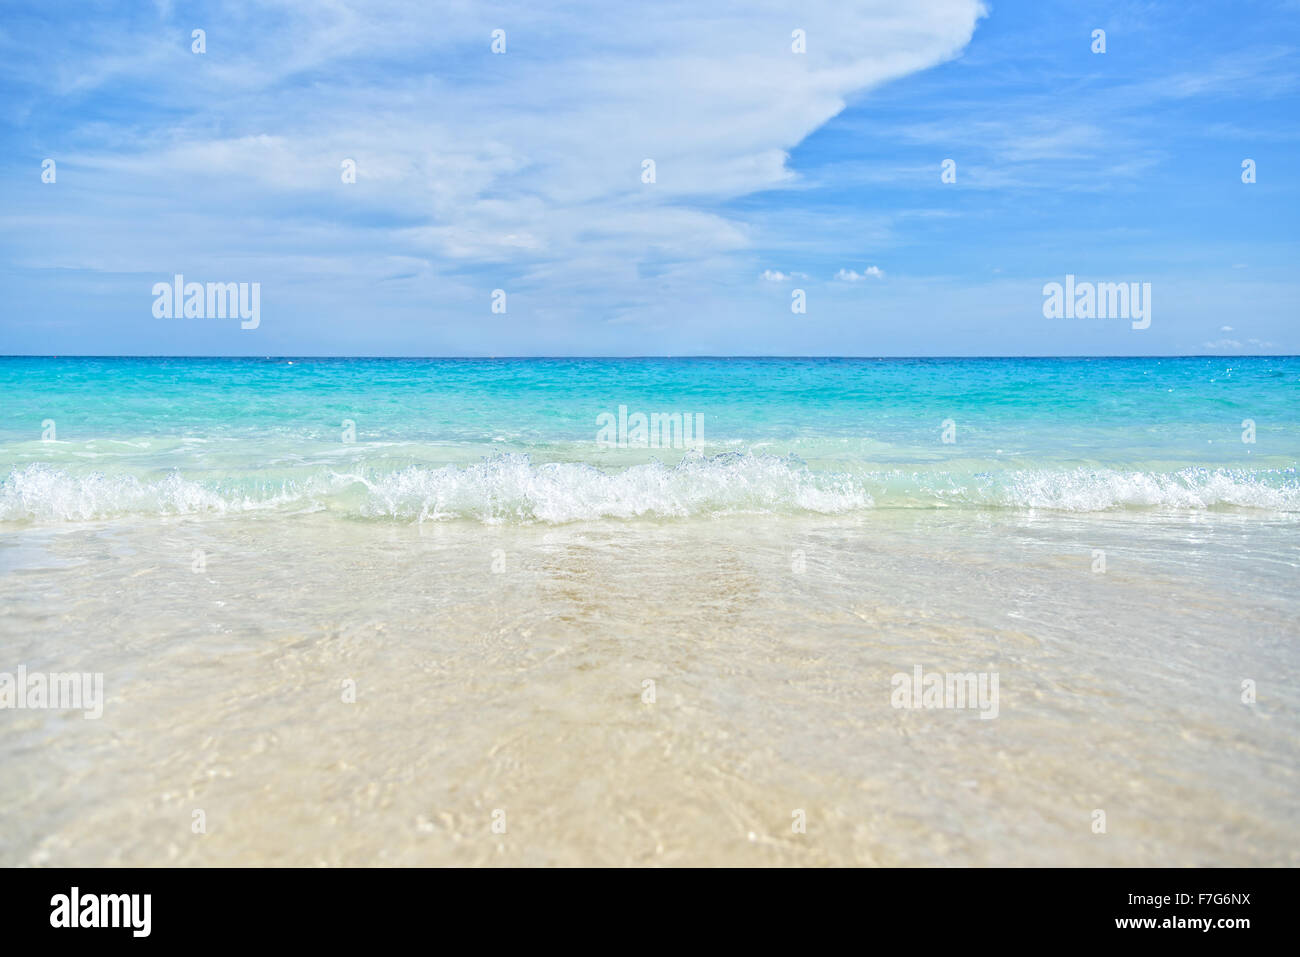 Splendidi paesaggi di mare, acqua cristallina presso la spiaggia di Koh Miang isola sotto il cielo blu durante il periodo estivo per lo sfondo in Foto Stock